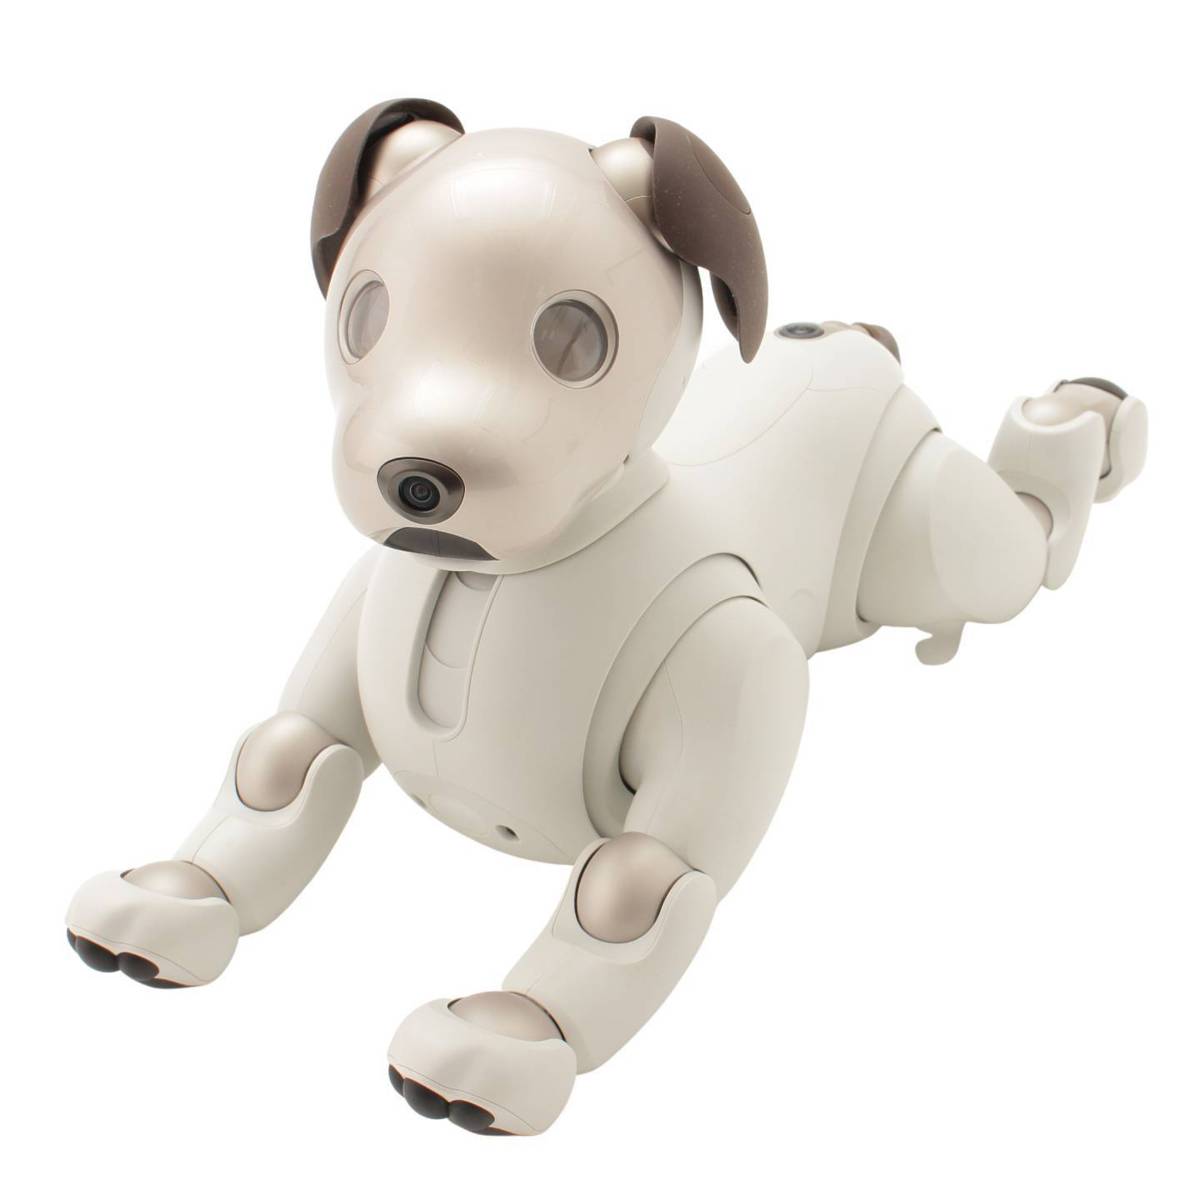 ソニー(SONY) アイボ aibo 犬 ペットロボット ERS-1000 ホワイト